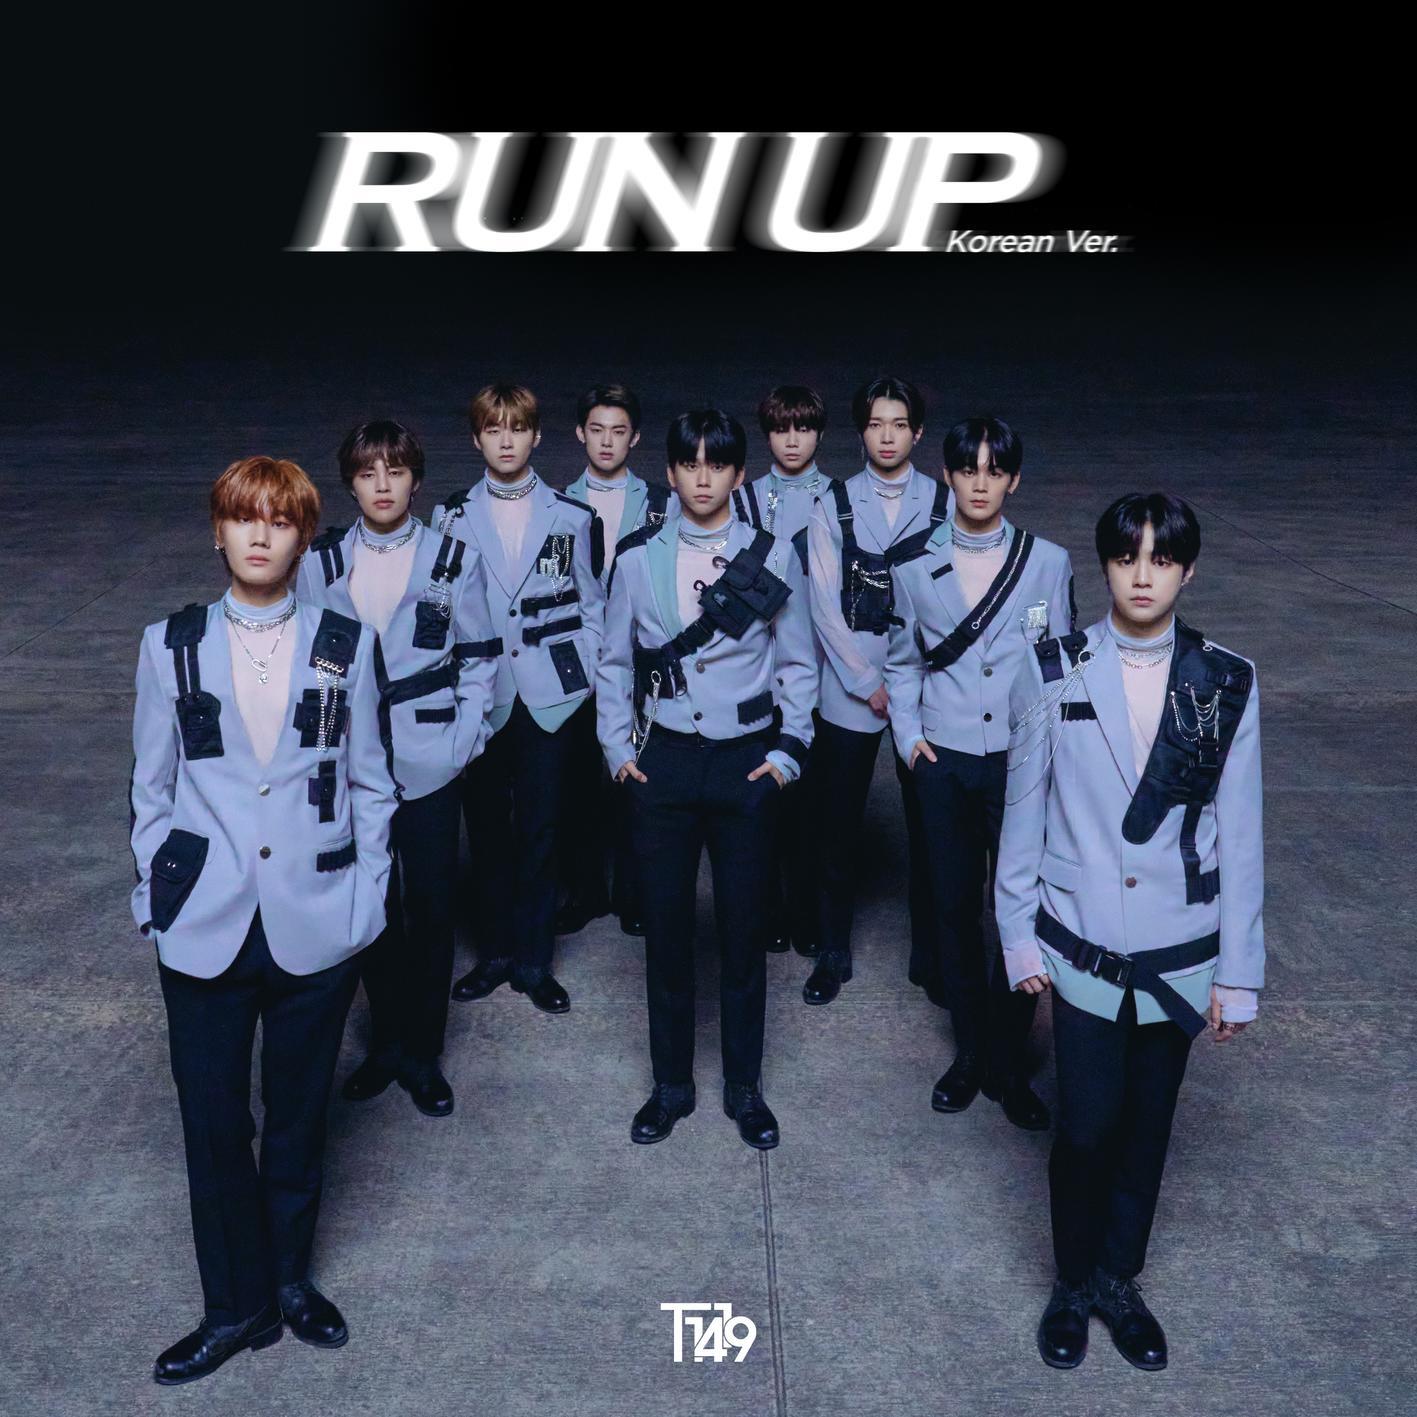 [影音] T1419 - Run up (Korean Ver.)